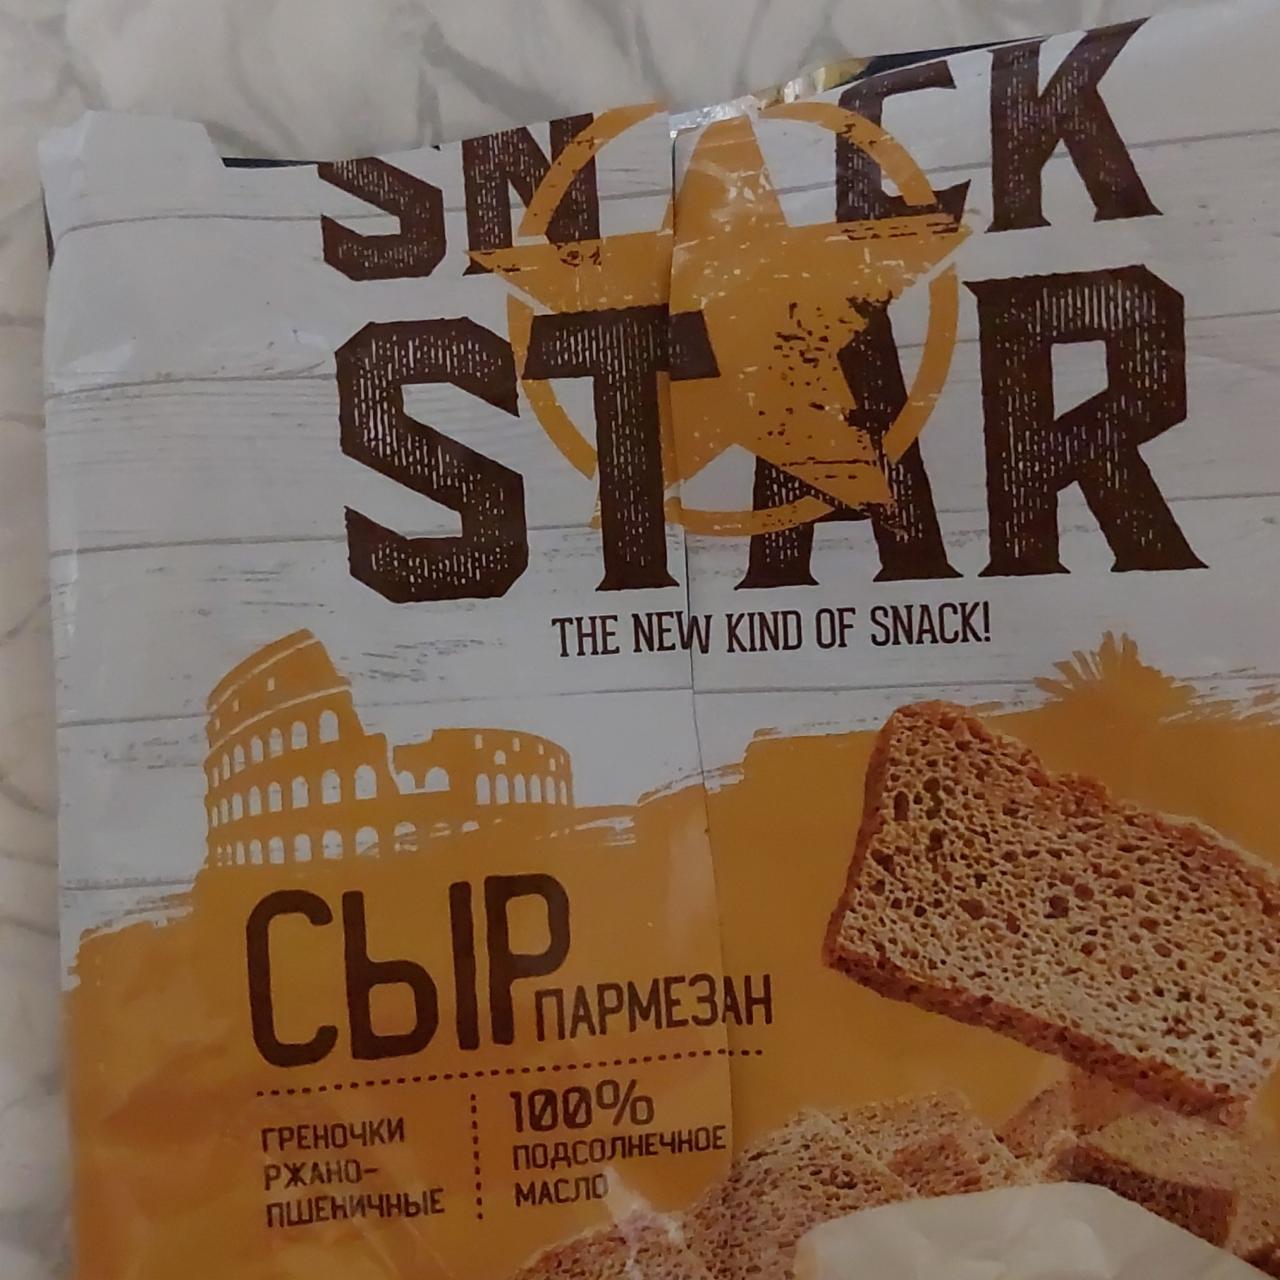 Фото - сухарики-гренки ржано-пшеничные со вкусом сыр пармезан Star snack